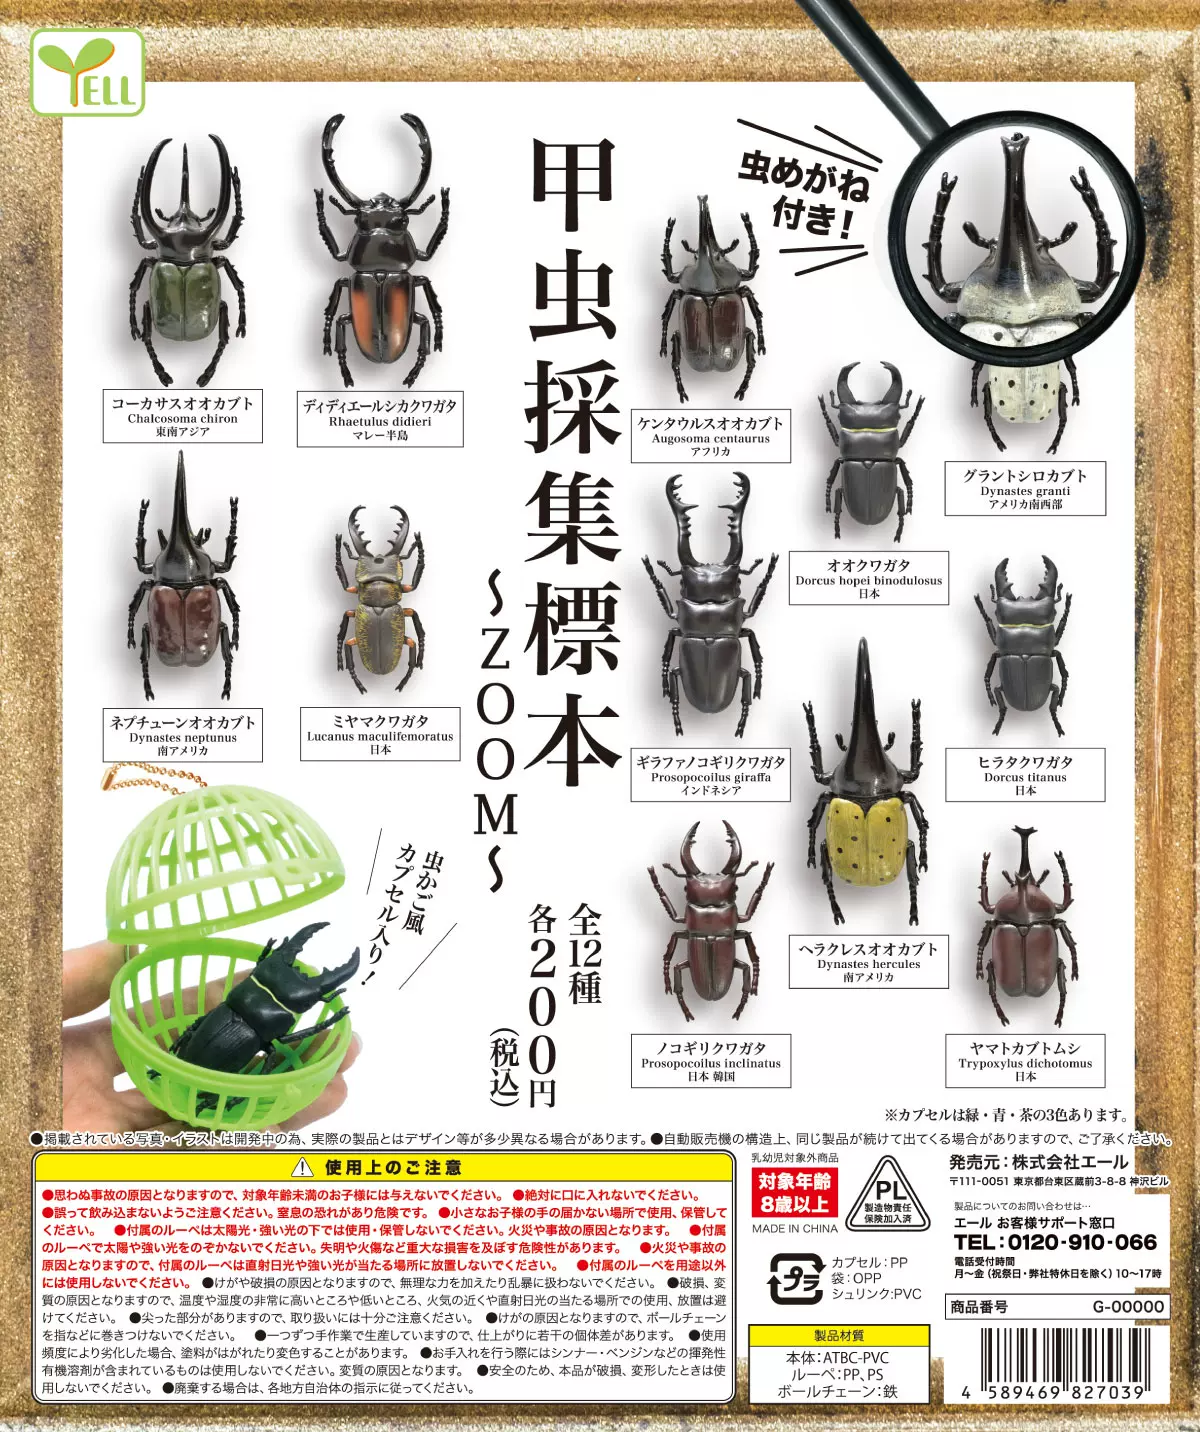 现货日本Yell扭蛋昆虫模型摆件仿真独角仙玩具甲虫采集标本-Taobao